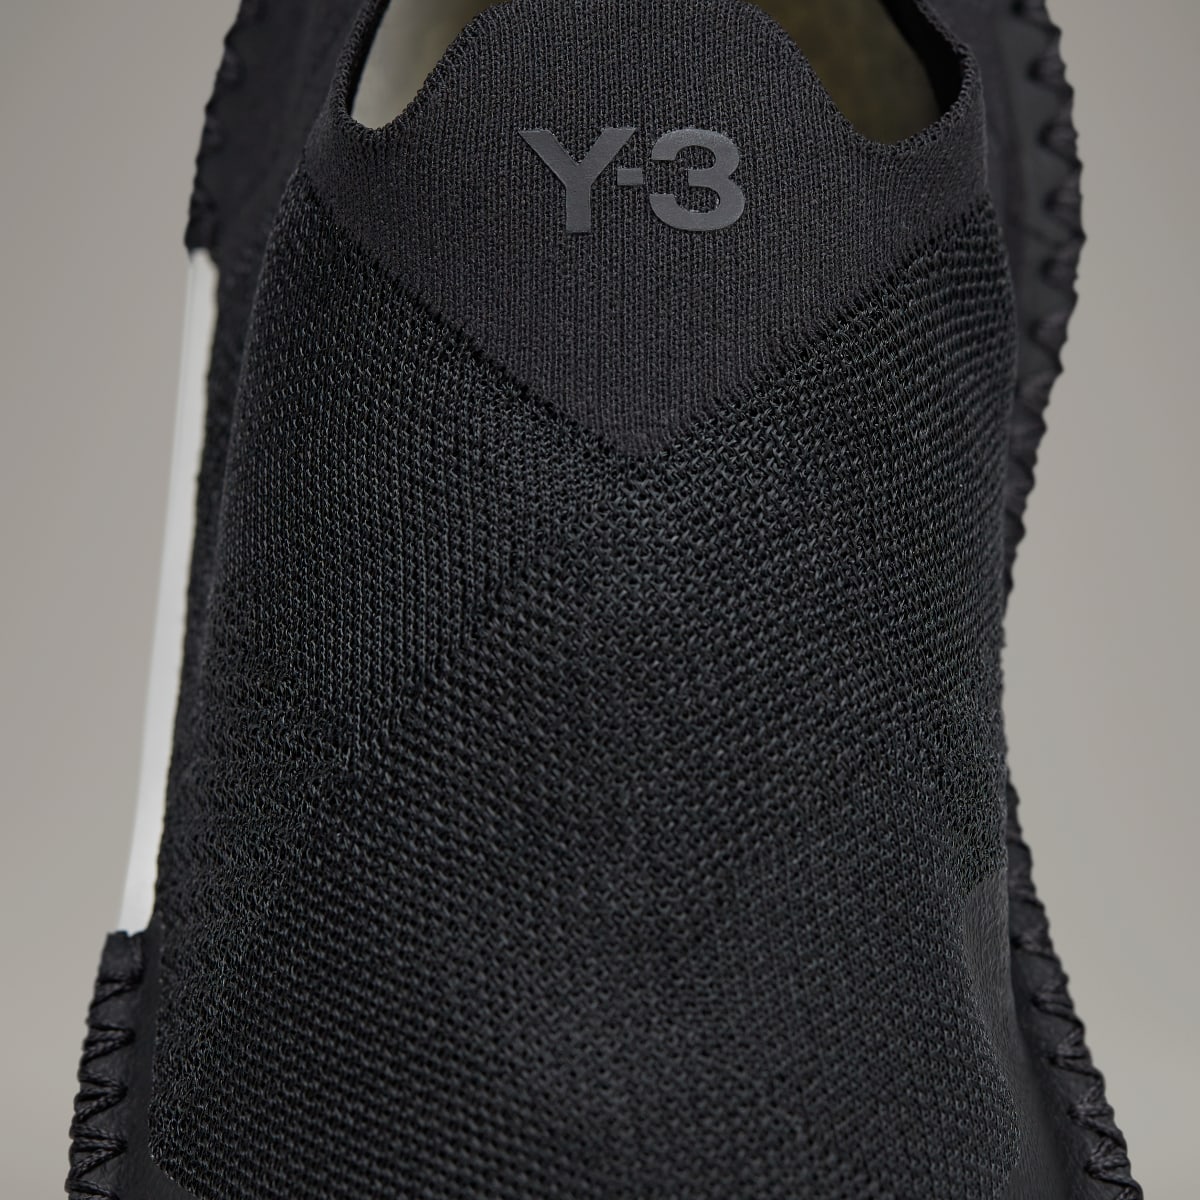 Adidas Y-3 Itogo. 11